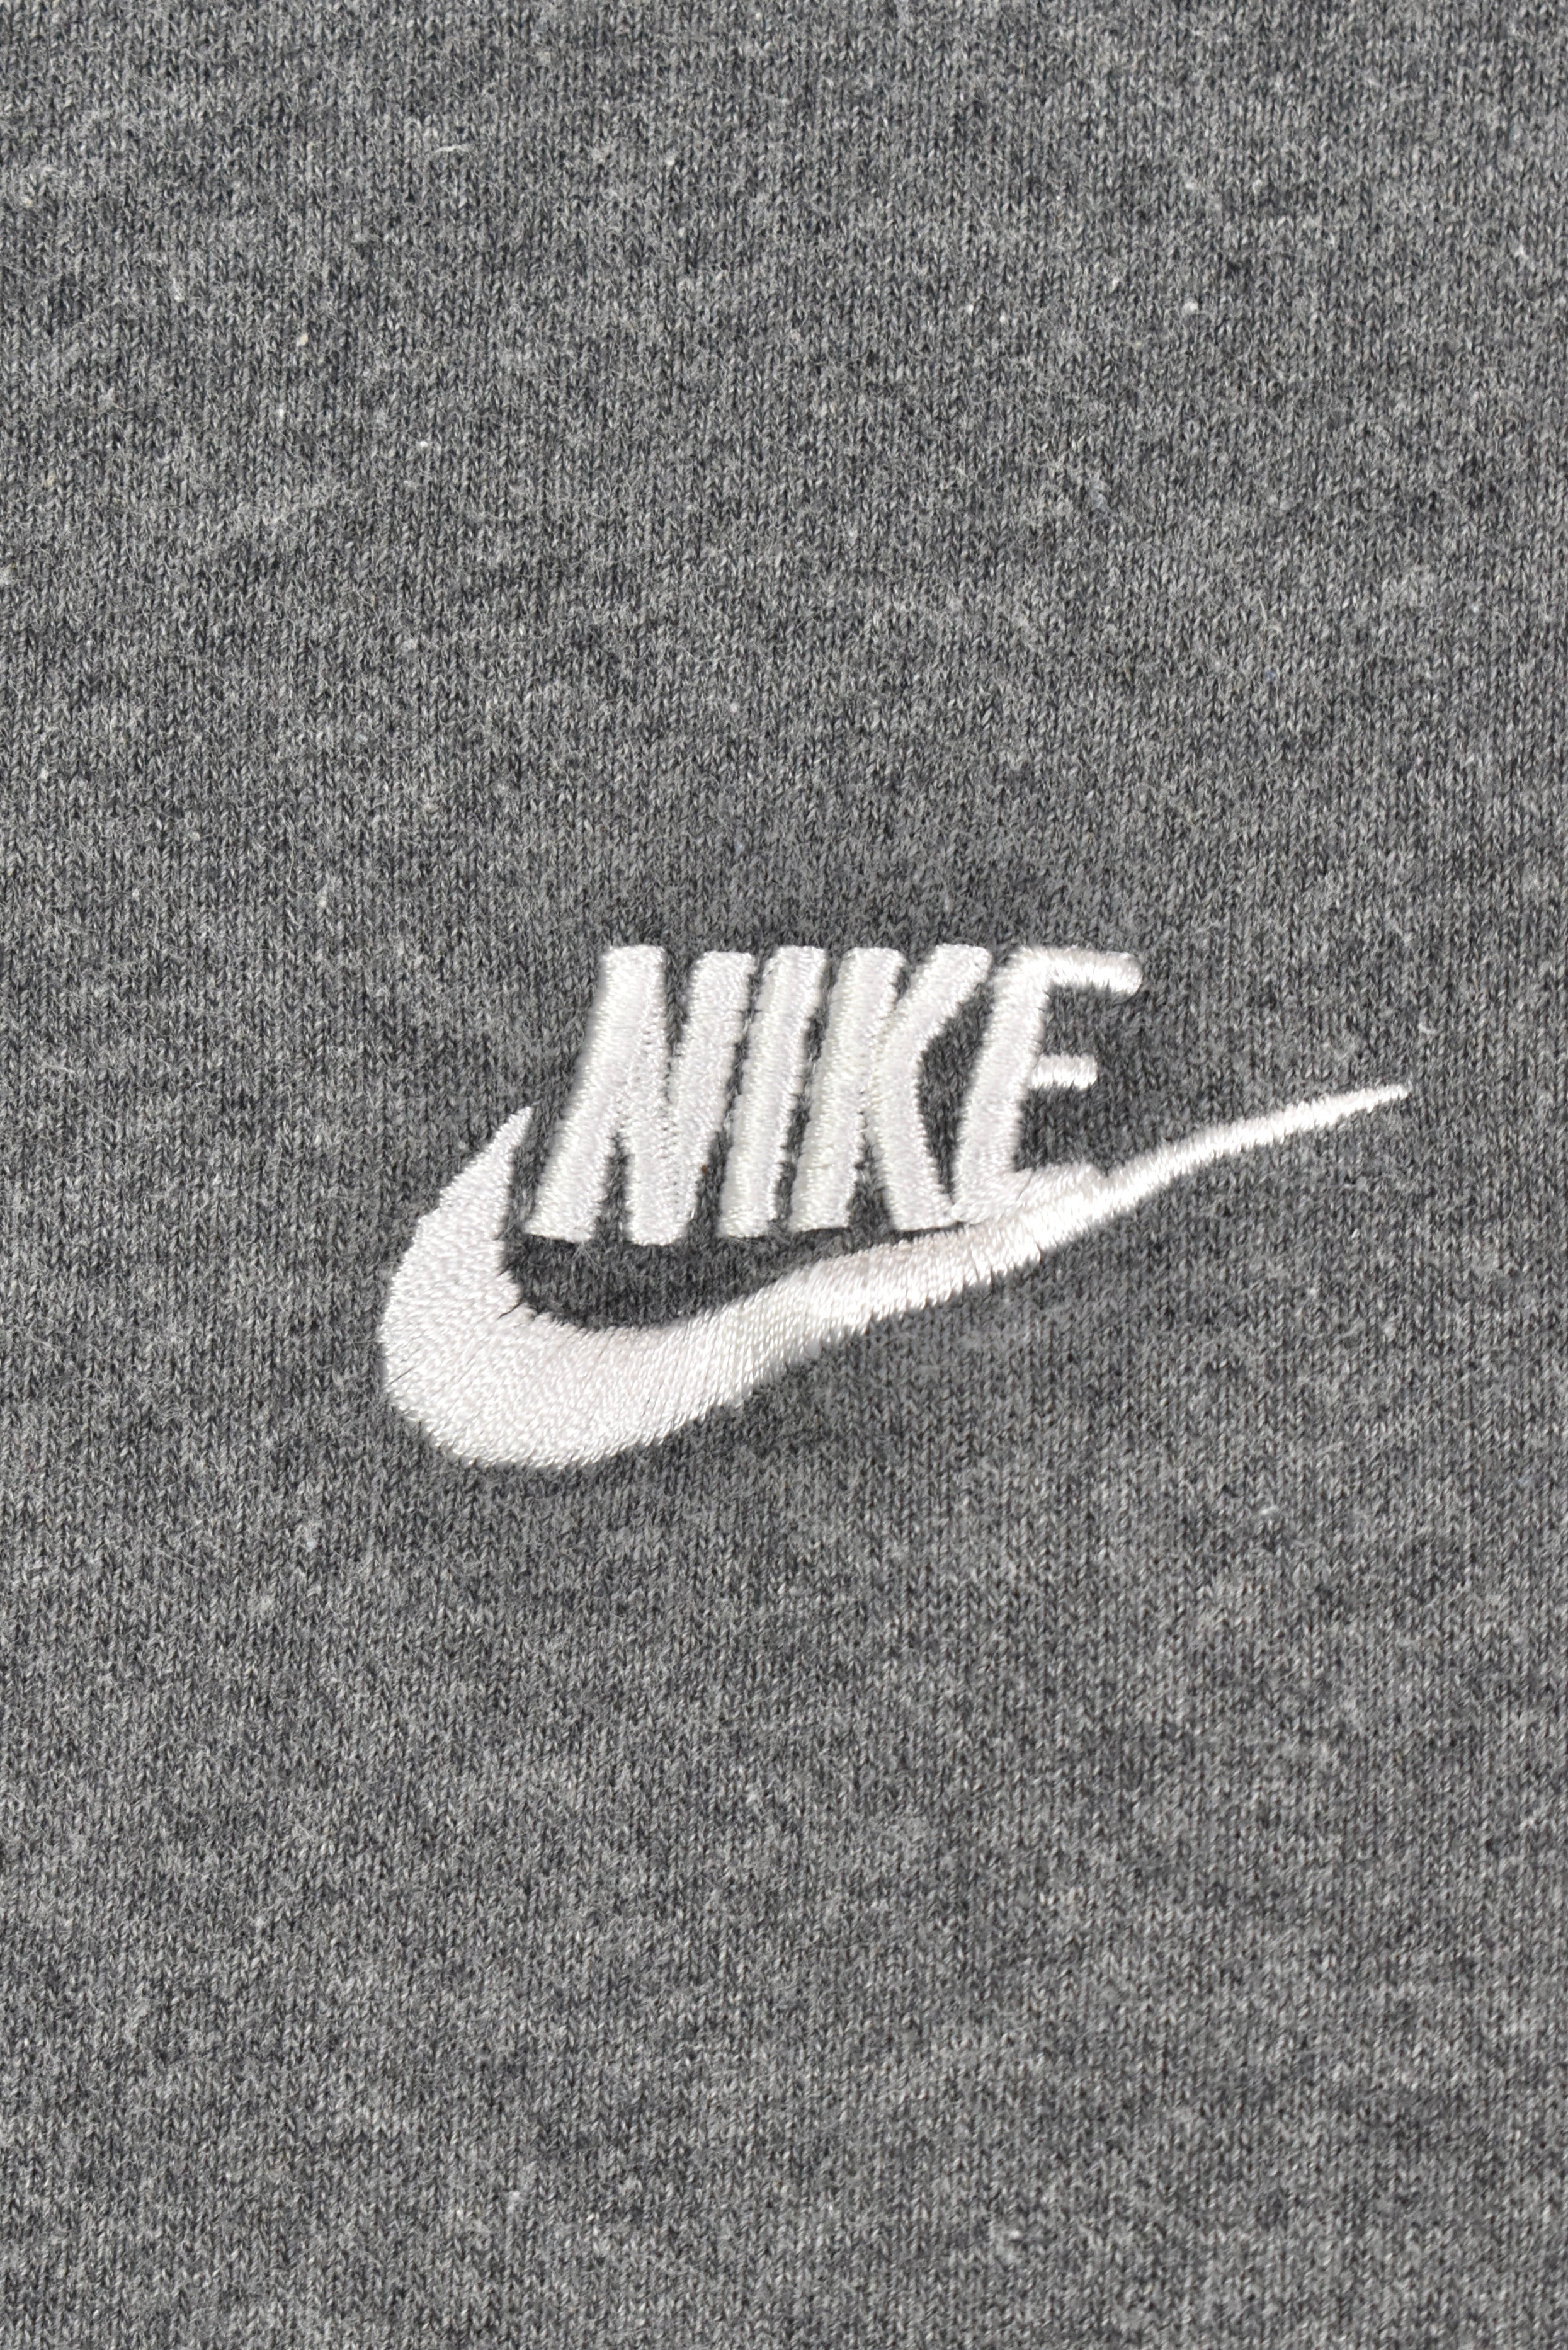 Vintage Nike hoodie, pullover embroidered sweatshirt - XXL, grey NIKE